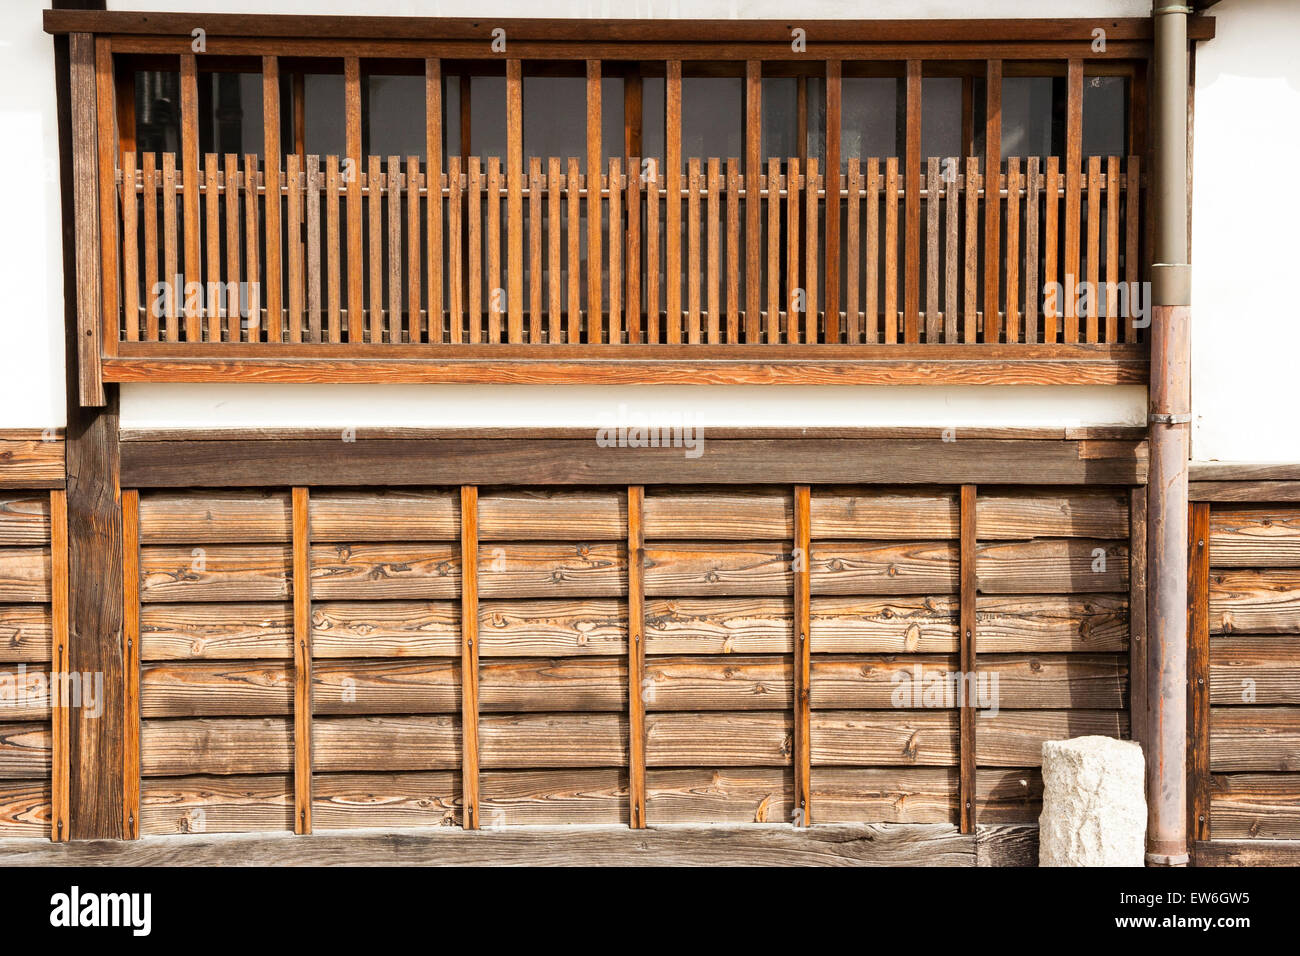 Biken, Kurashiki In Giappone. Tipica finestra tradizionale giapponese in legno a doga su muro di gesso bianco con la parte inferiore coperta in tavole di legno. Foto Stock